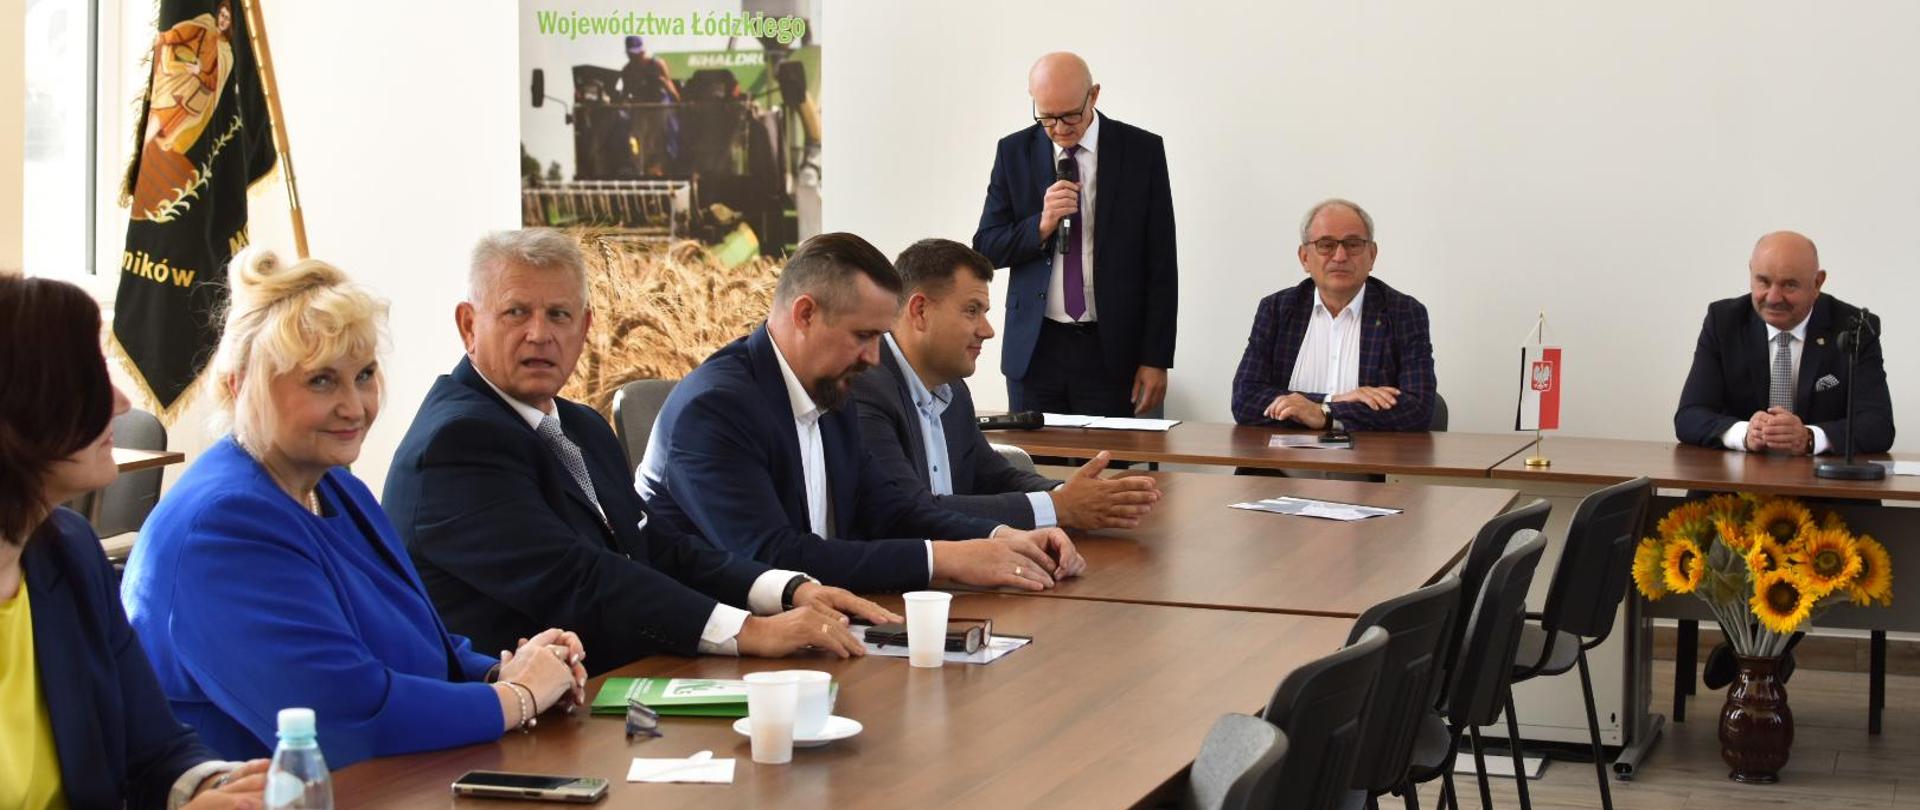 Spotkanie w Izbie Rolniczej Województwa Łódzkiego